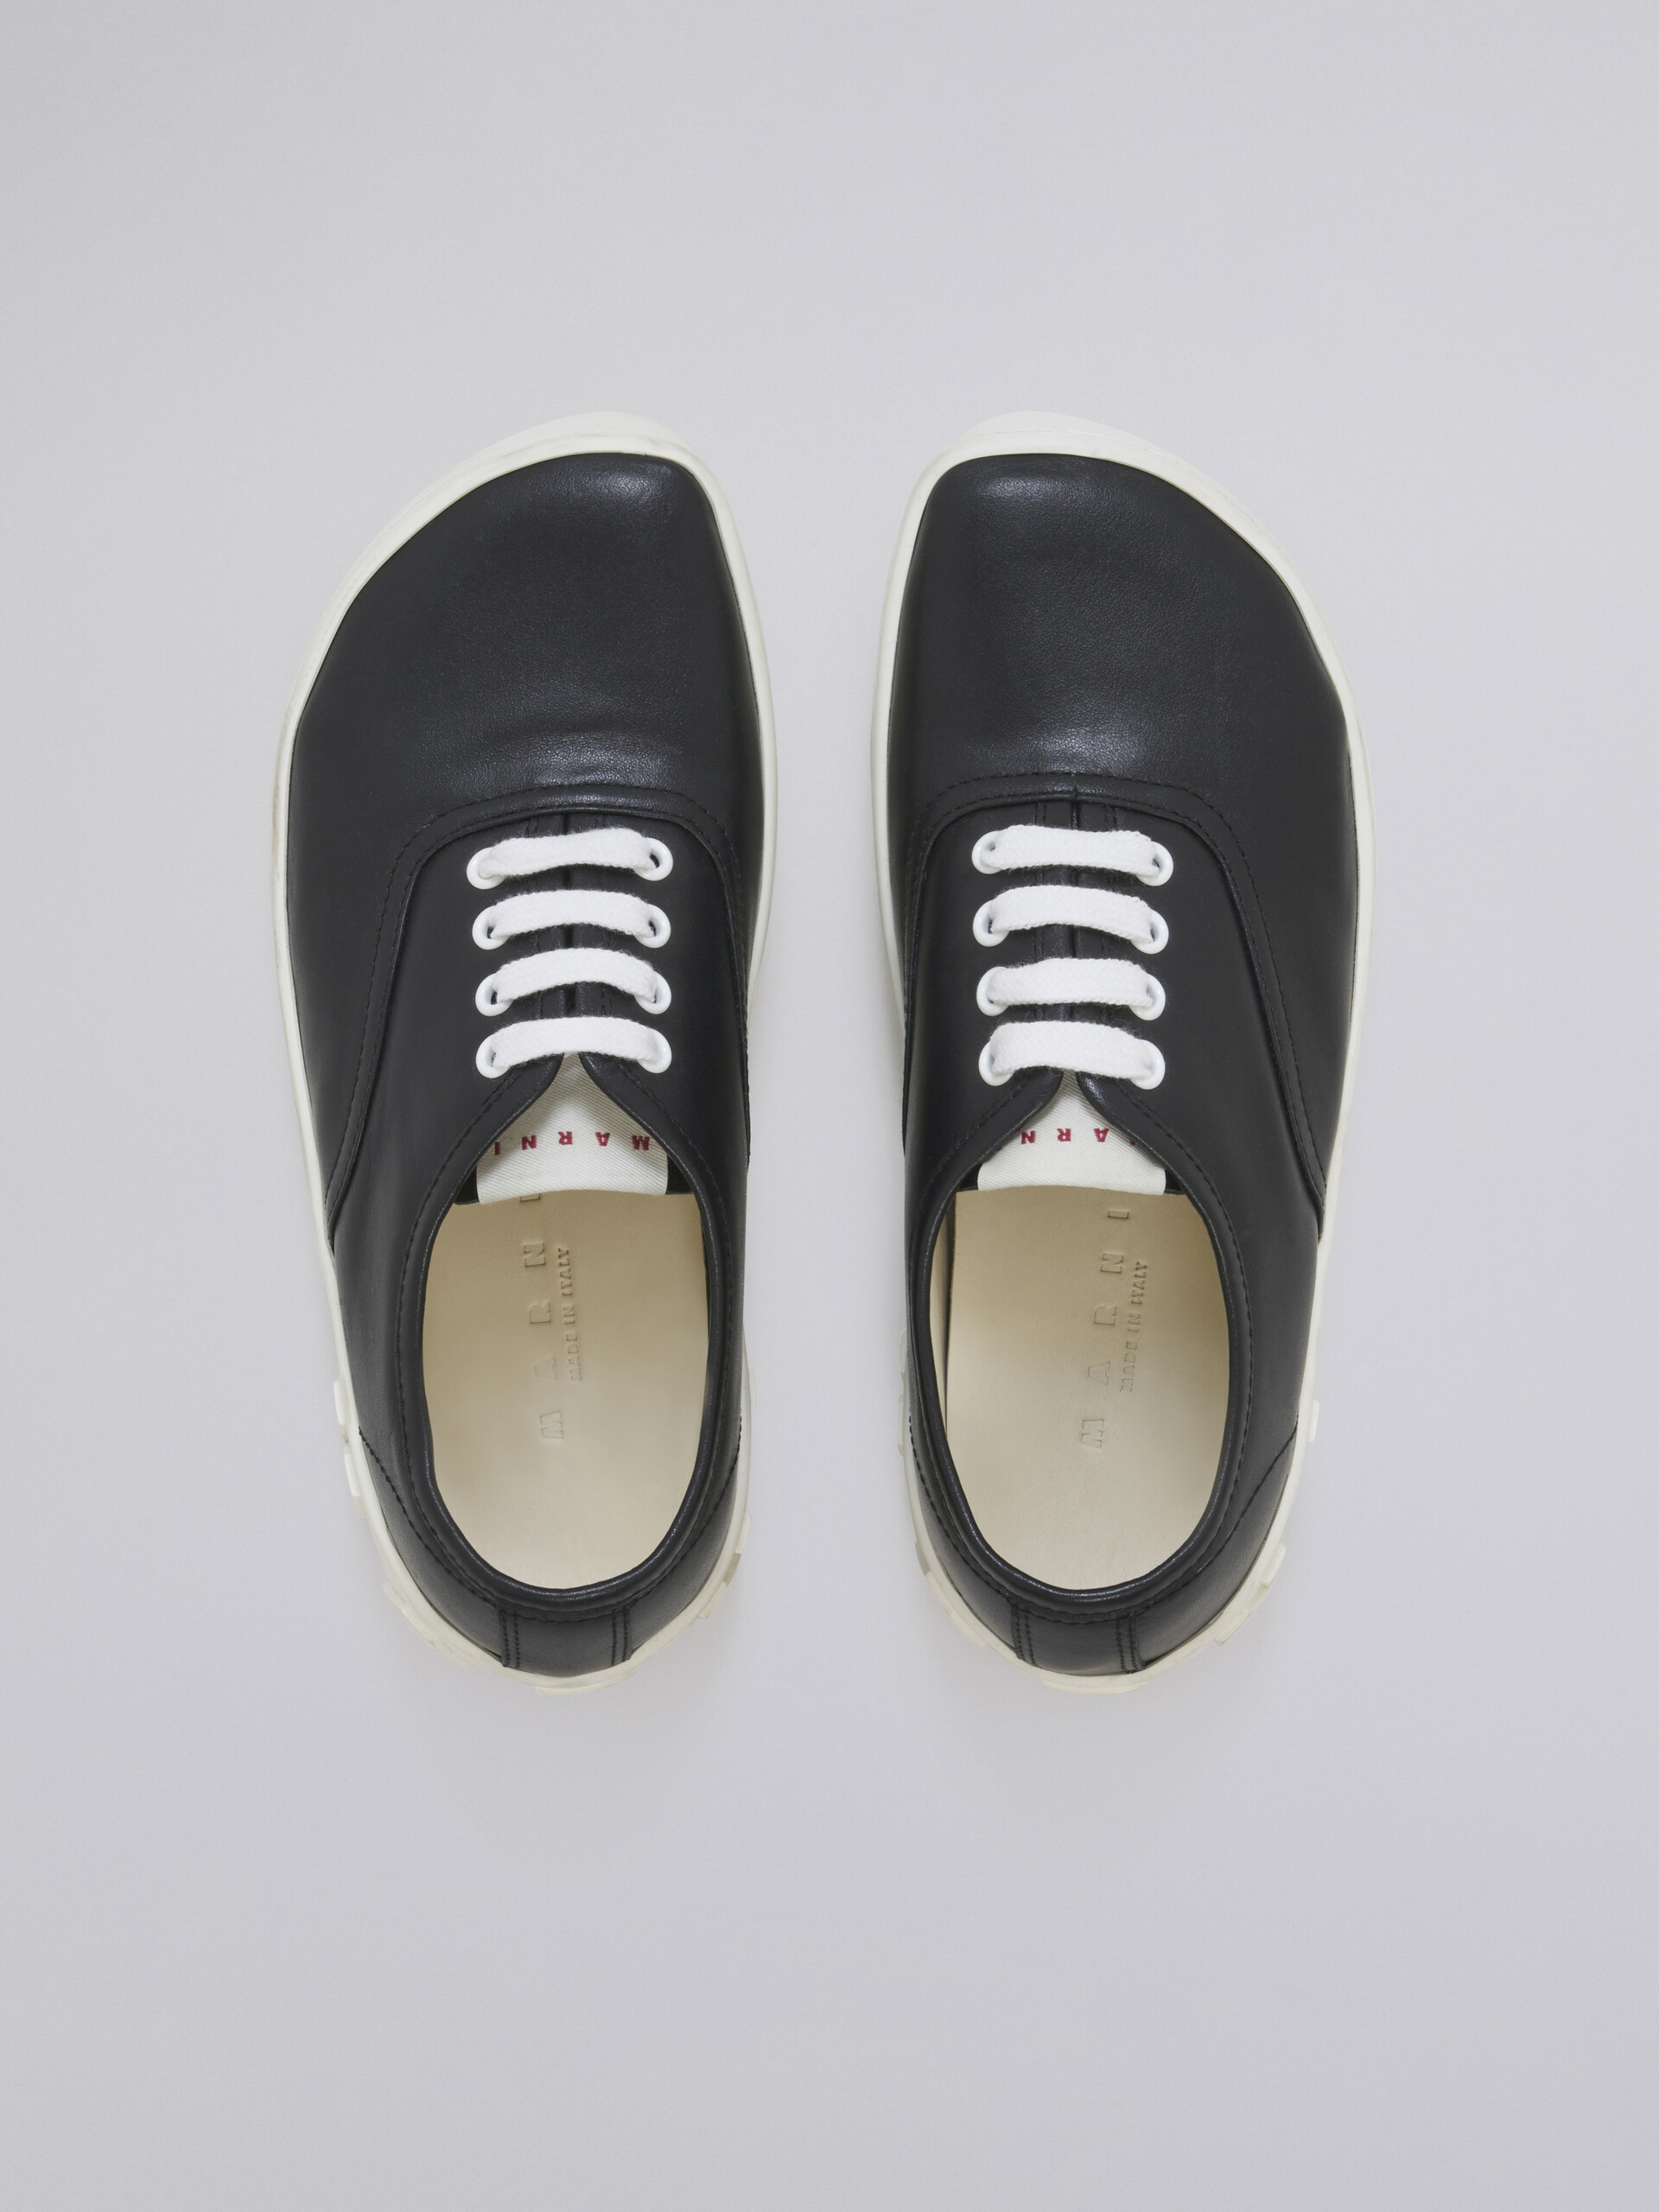 Sneaker in vitello con maxi logo in rilievo nero - Sneakers - Image 4